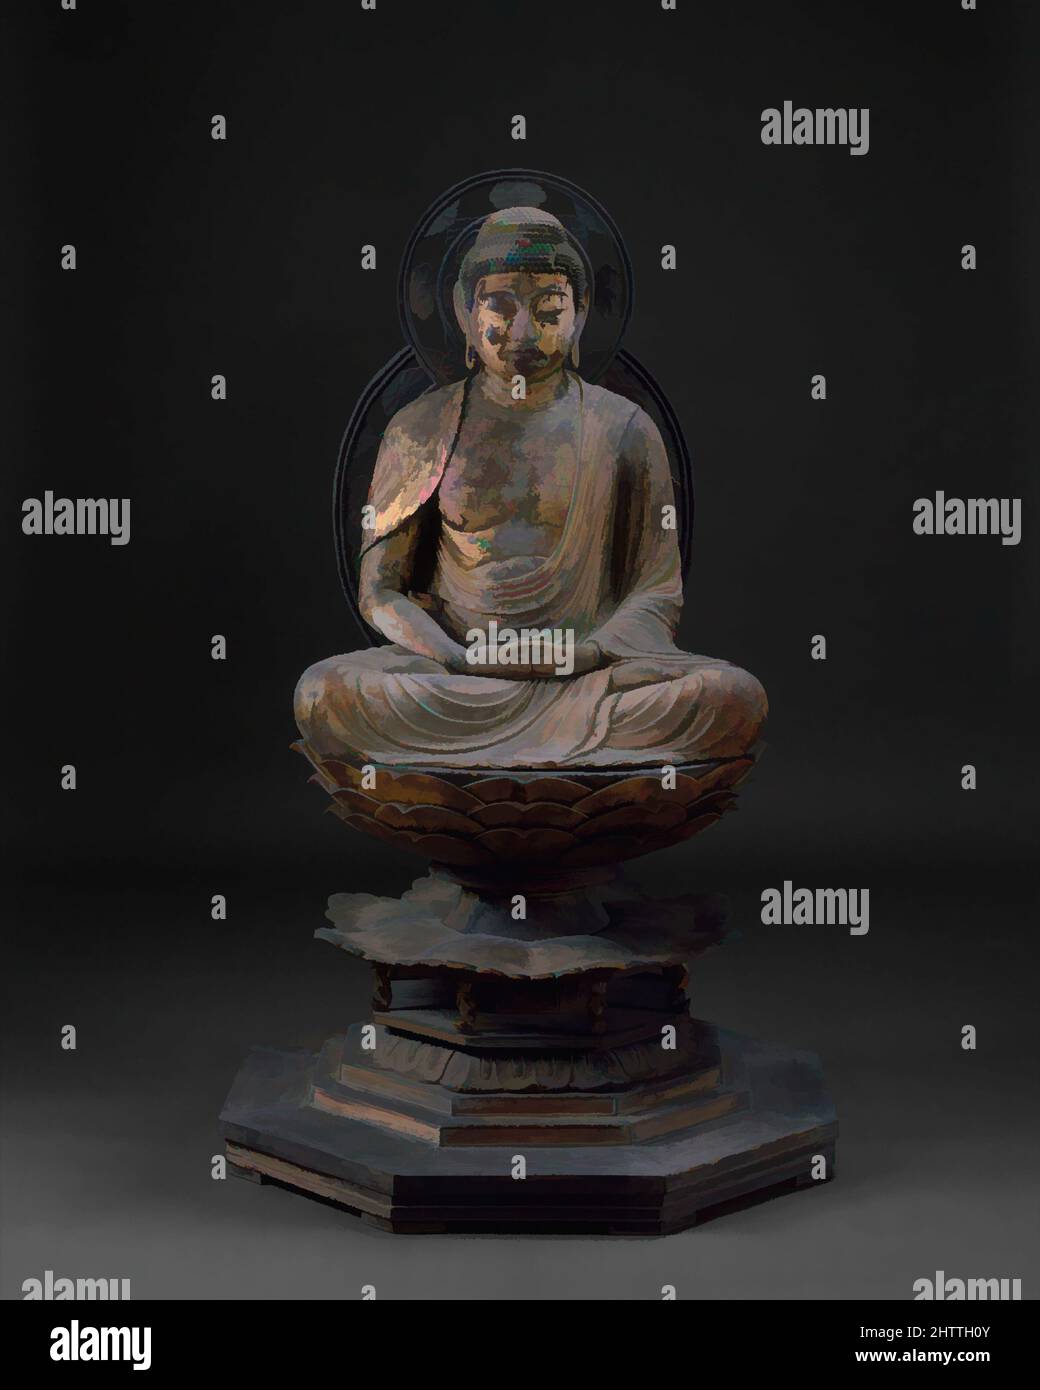 Arte ispirata da Amida Nyorai, 阿弥陀如来坐像, periodo Kamakura (1185-1333), ca. 1250, Giappone, legno con foglia d'oro, tuta: H. 34 5/8" (87,9 cm); W. 28 3/4" (73 cm); D. 22 3/4" (57,8 cm), scultura, Amida Nyorai (sanscrito: Amitabha Tathagata), il Buddha di luce illimitata, si siede su un, opere classiche modernizzate da Artotop con un tuffo di modernità. Forme, colore e valore, impatto visivo accattivante sulle emozioni artistiche attraverso la libertà delle opere d'arte in modo contemporaneo. Un messaggio senza tempo che persegue una nuova direzione selvaggiamente creativa. Artisti che si rivolgono al supporto digitale e creano l'NFT Artotop Foto Stock